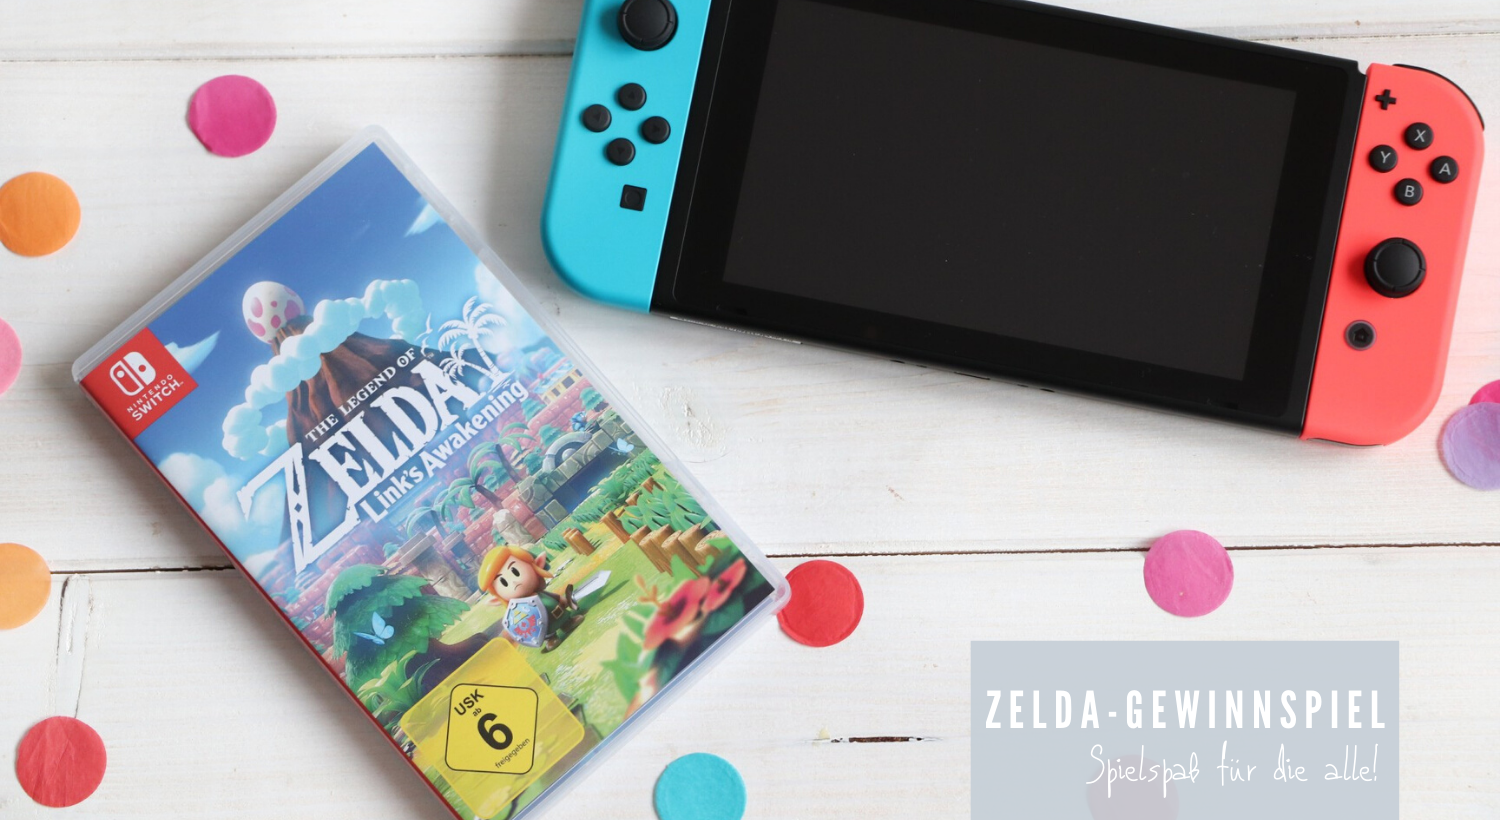 Zelda Gewinnspiel